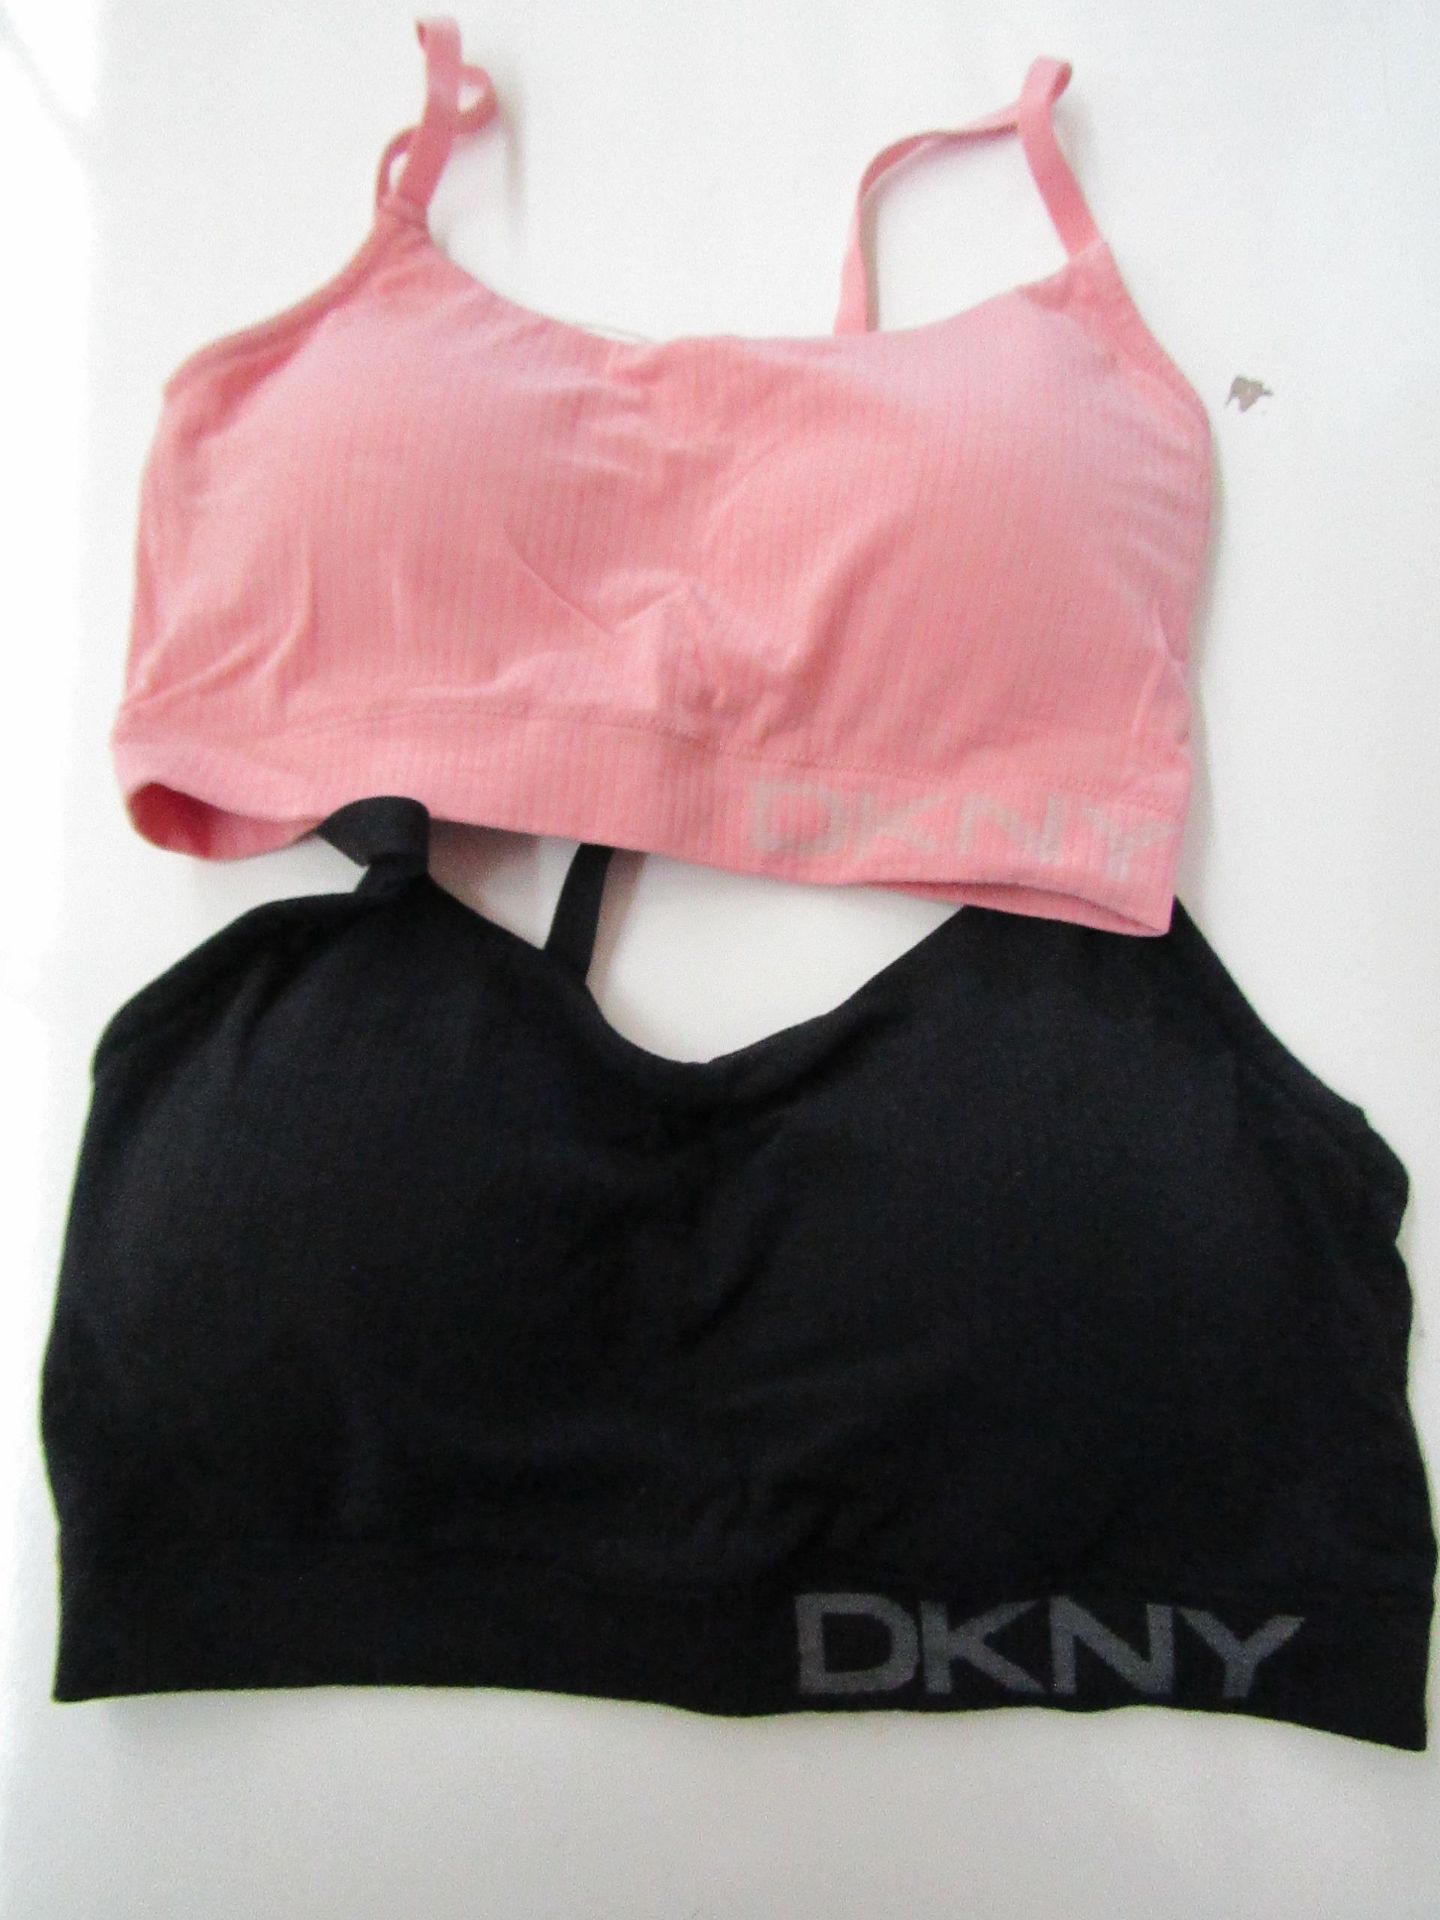 2 X DKNY Bra"s 1 Small 1 Large Unworn Not in Original Packaging